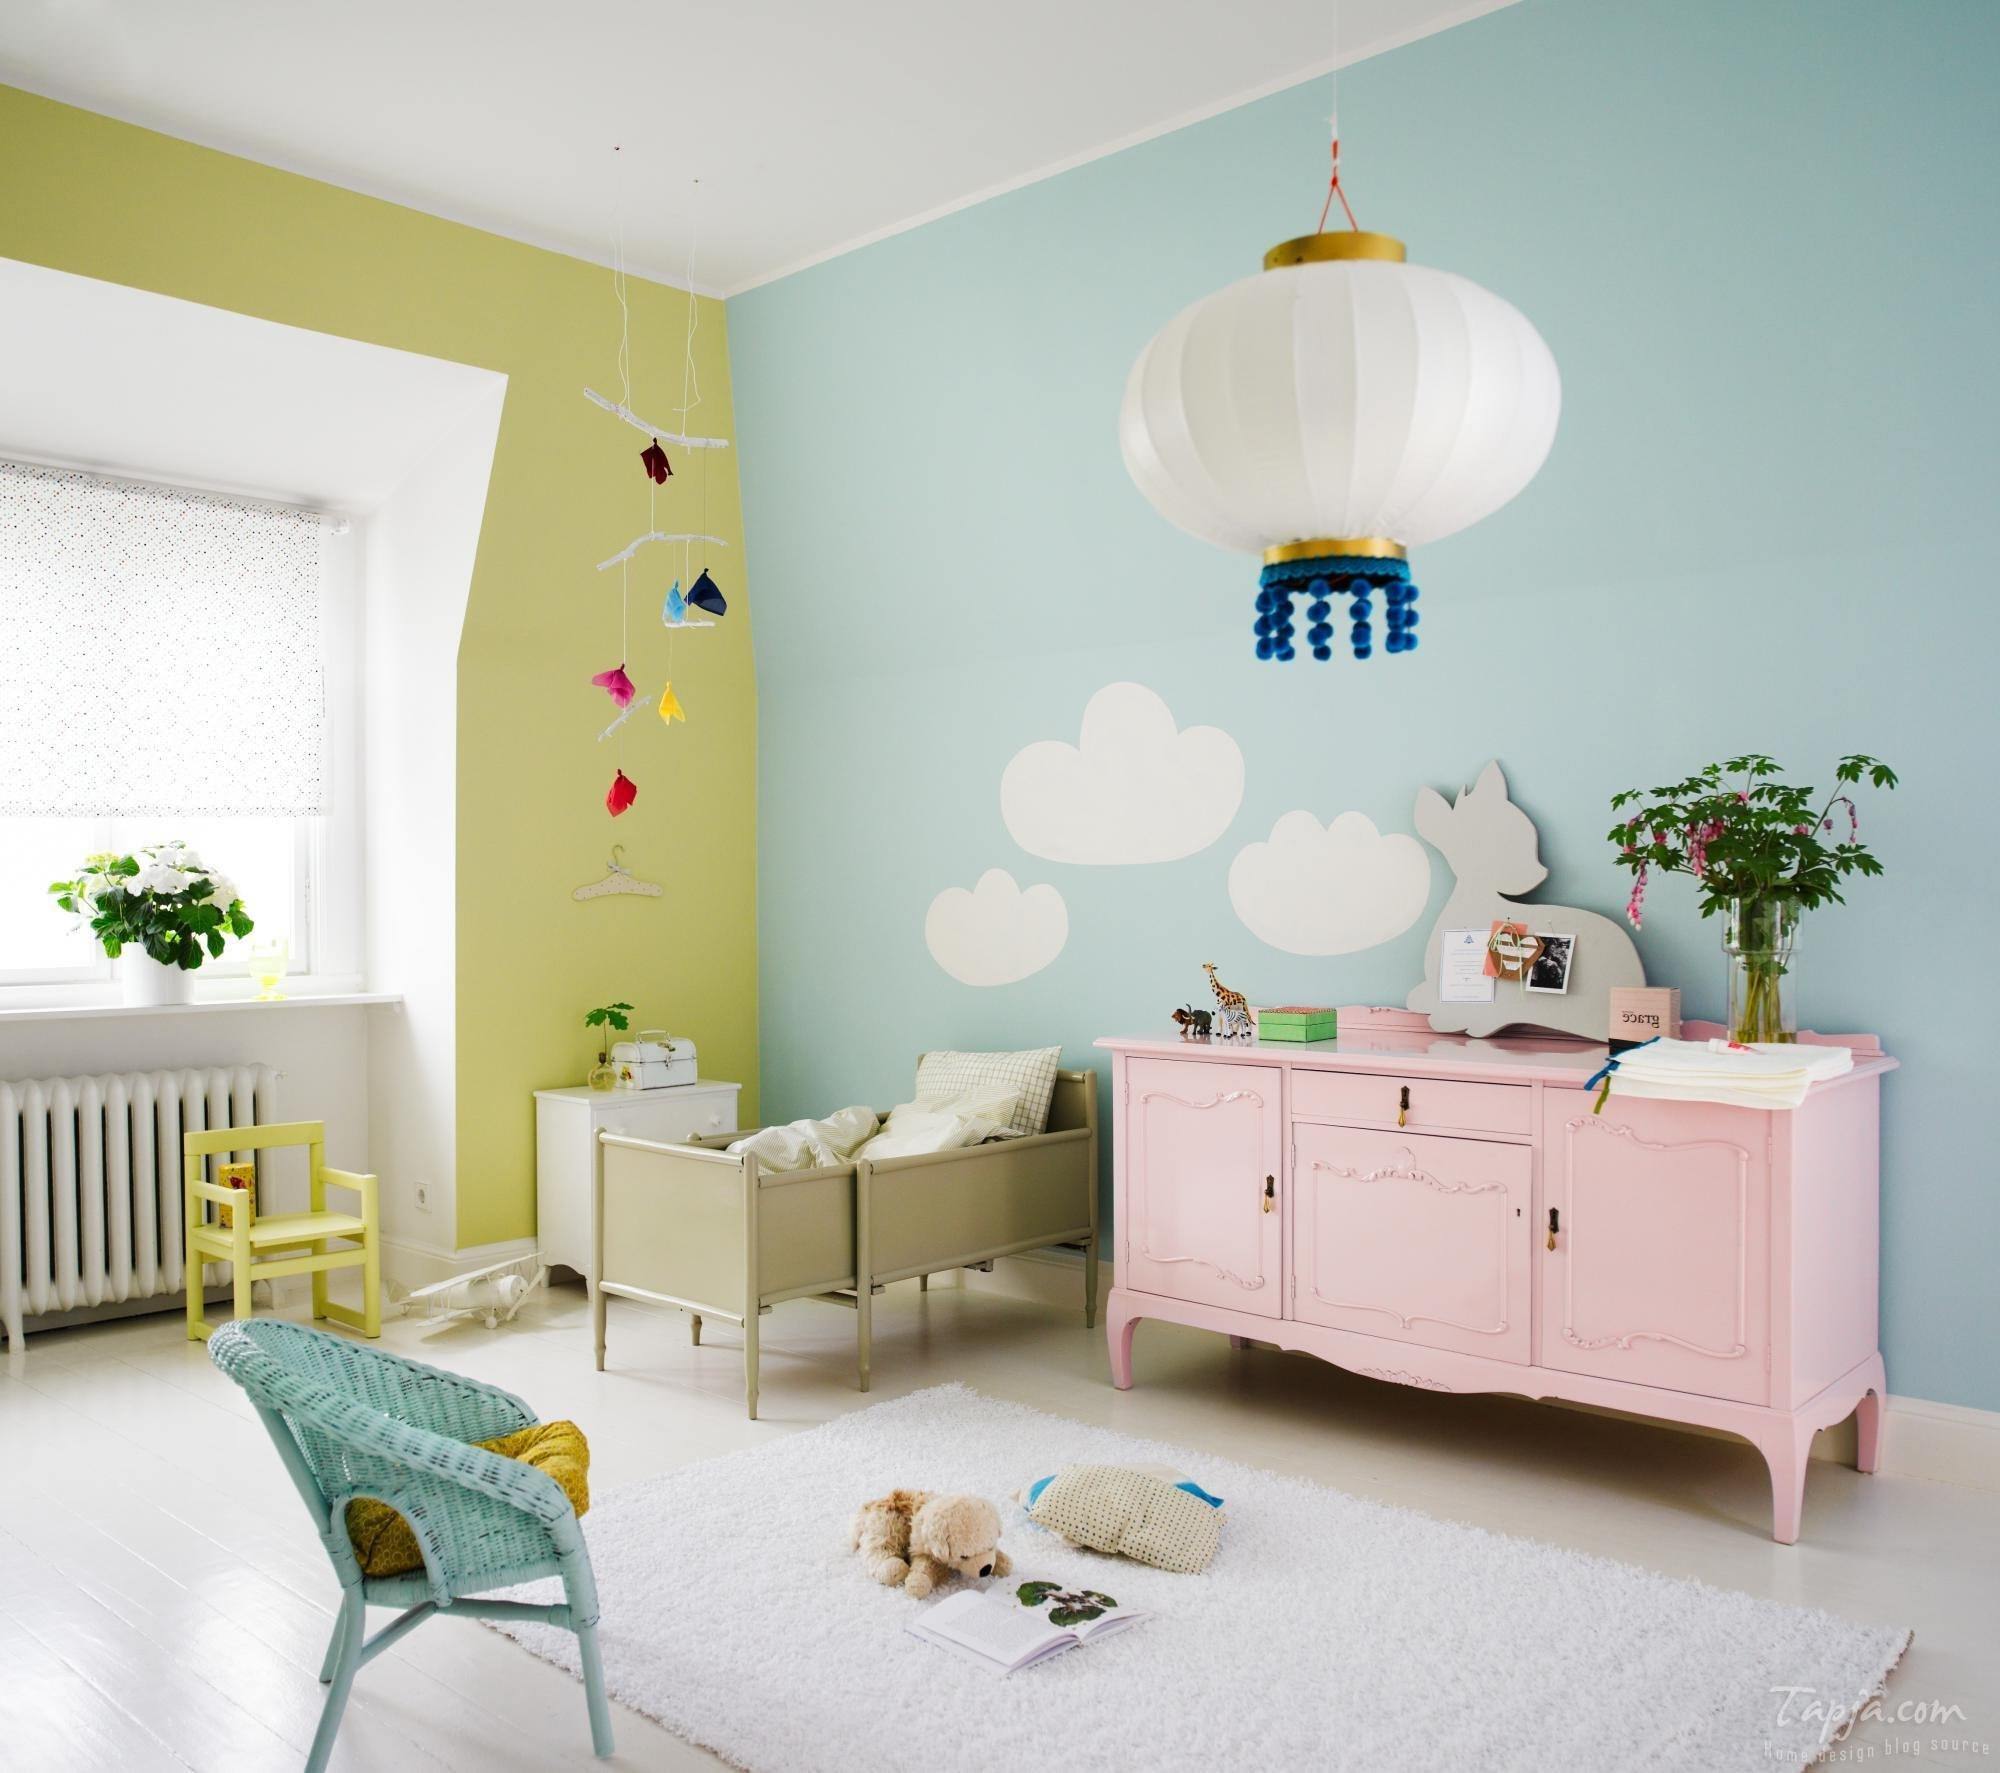 Какой краской можно покрасить детскую комнату?